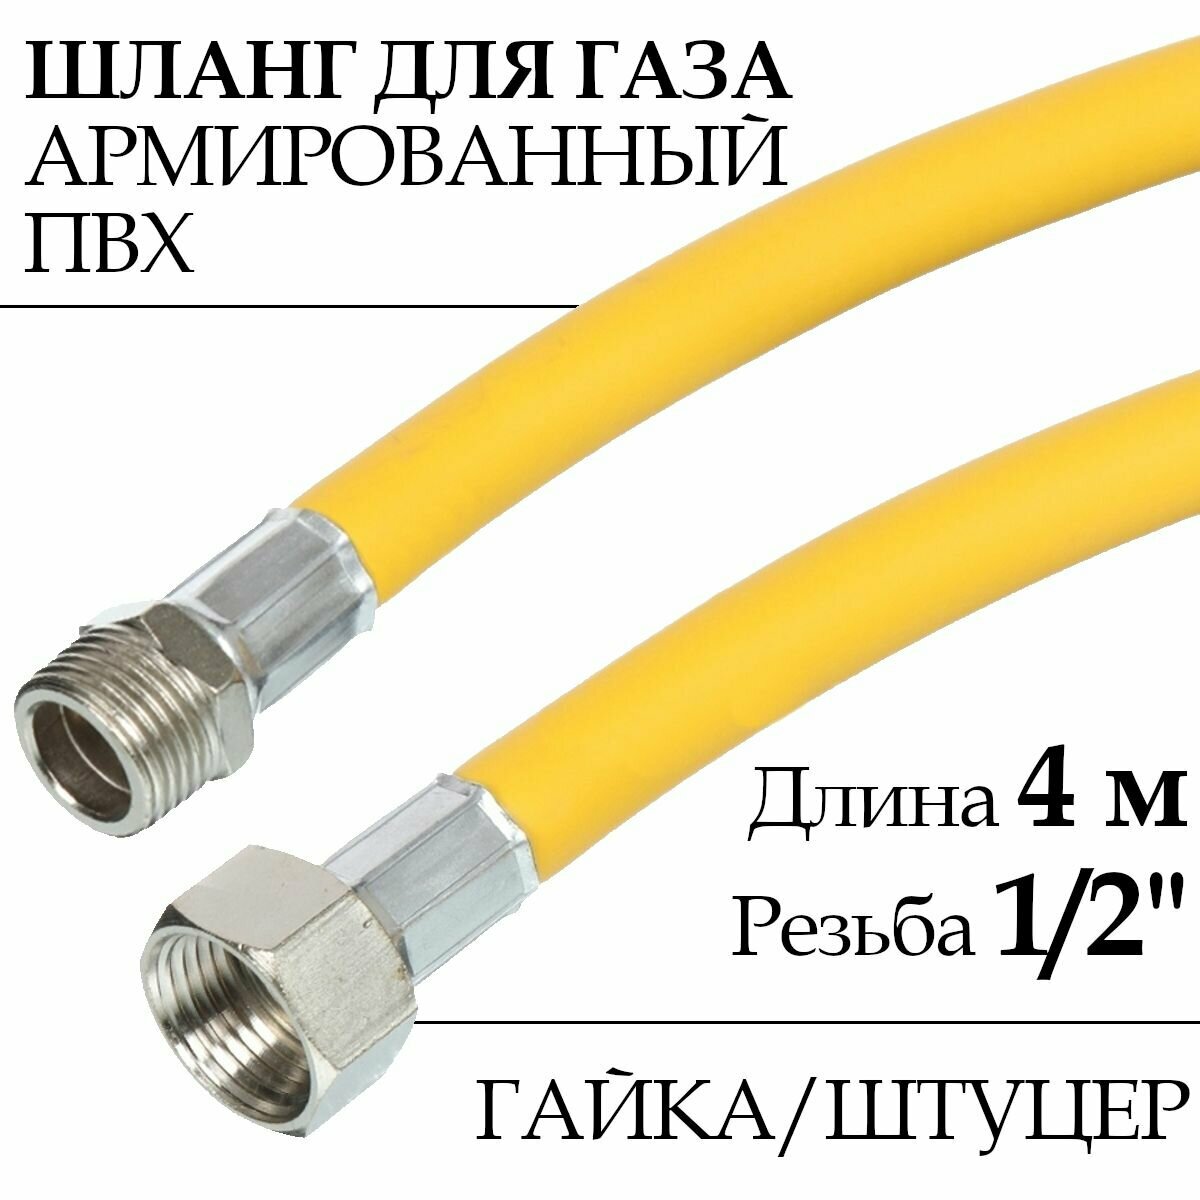 Шланг для газовых приборов (плит баллонов) из ПВХ (желтый) 1/2" х 40 м гайка/штуцер